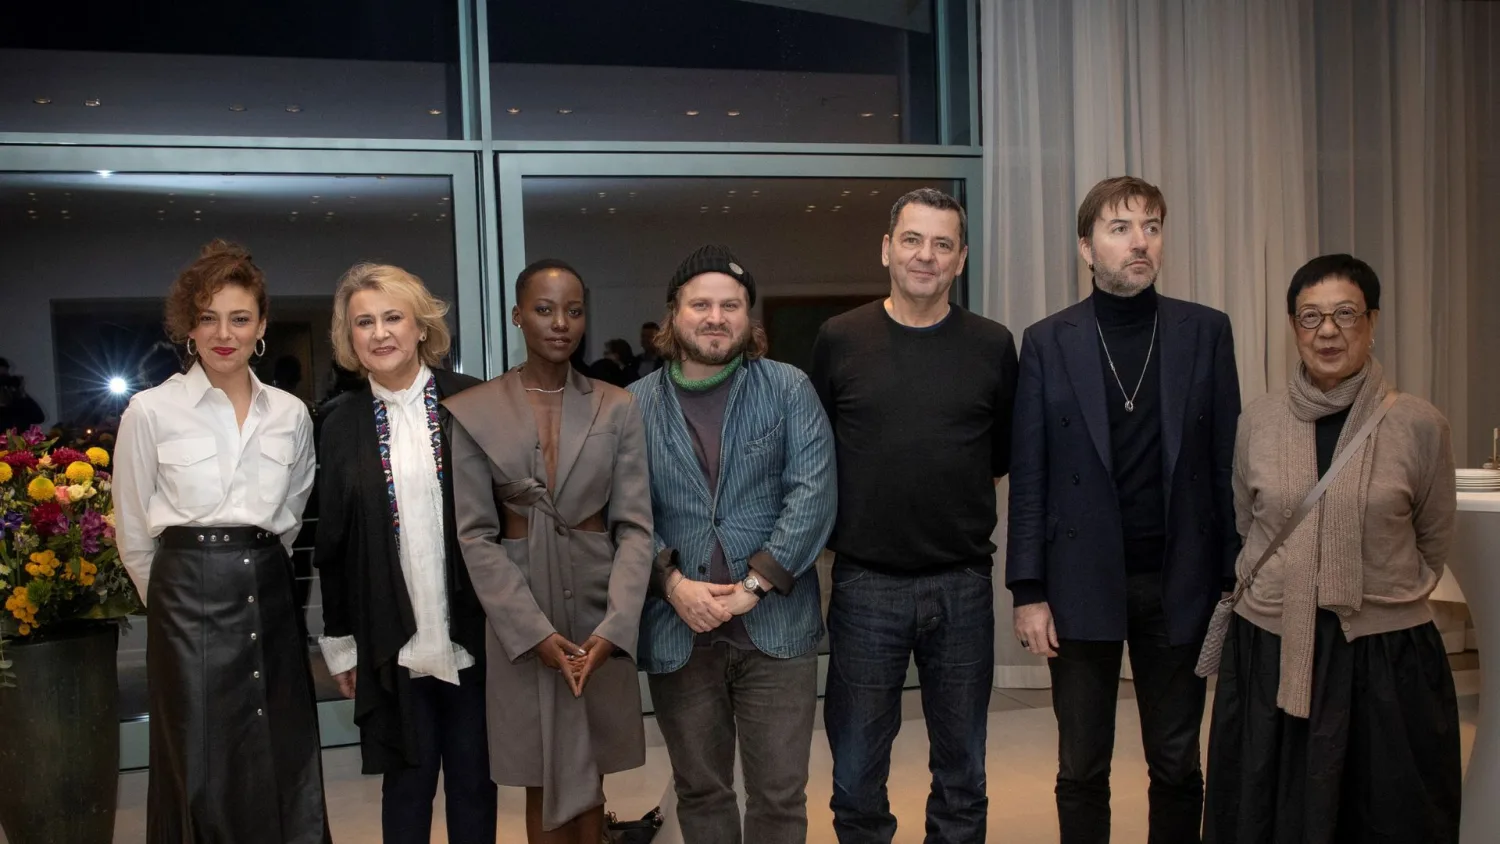 Berlinale, film e politica nella conferenza di apertura